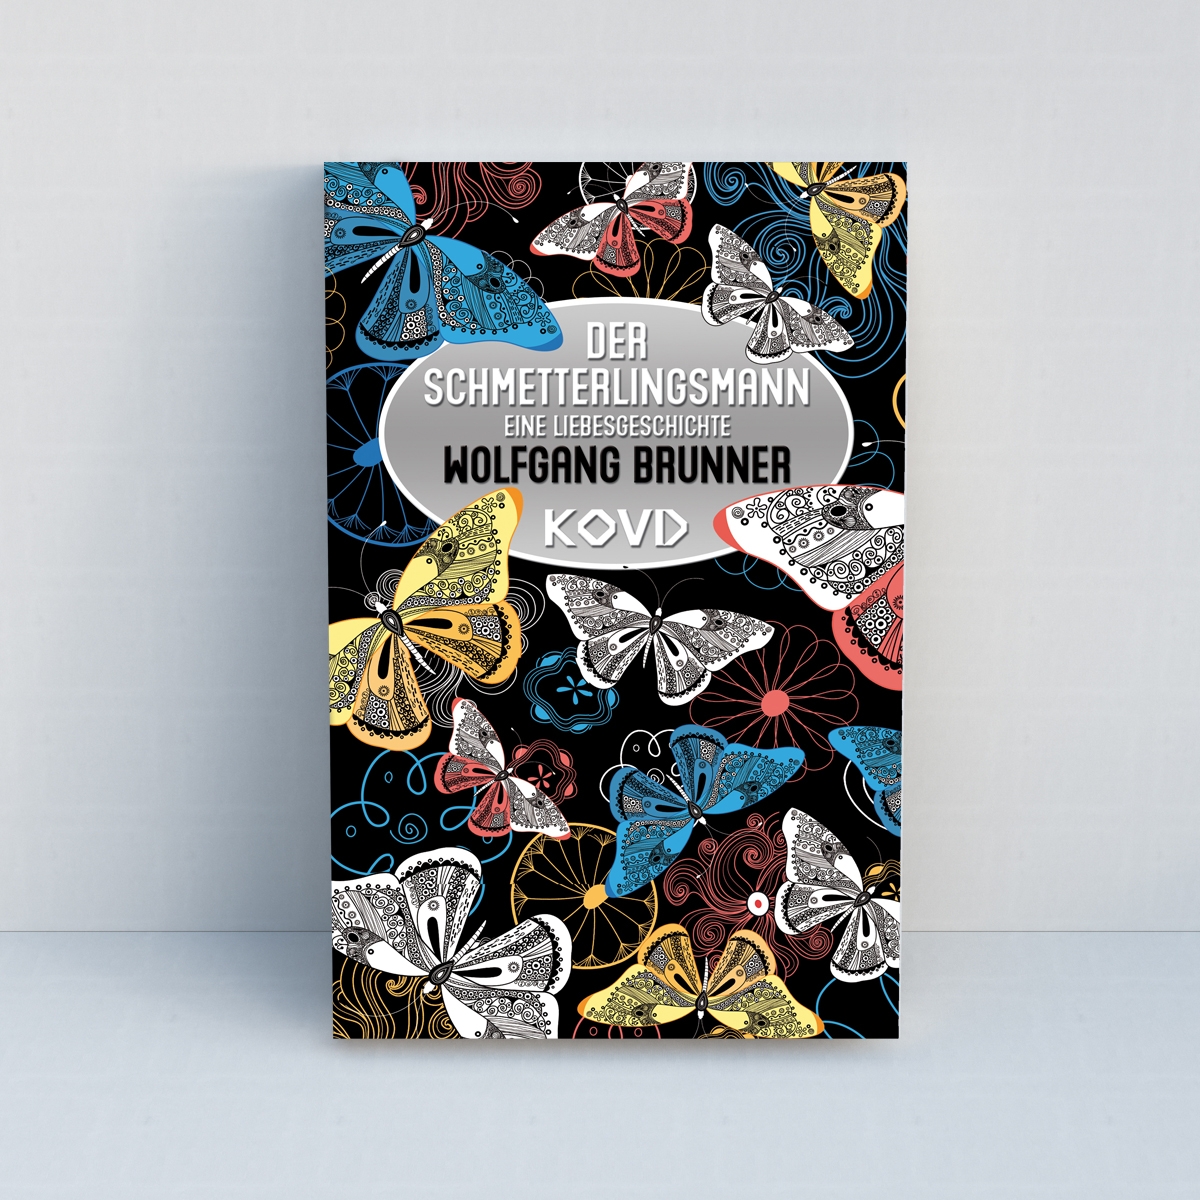 Der Schmetterlingsmann: Eine Liebesgeschichte von Wolfgang Brunner - Standard Edition